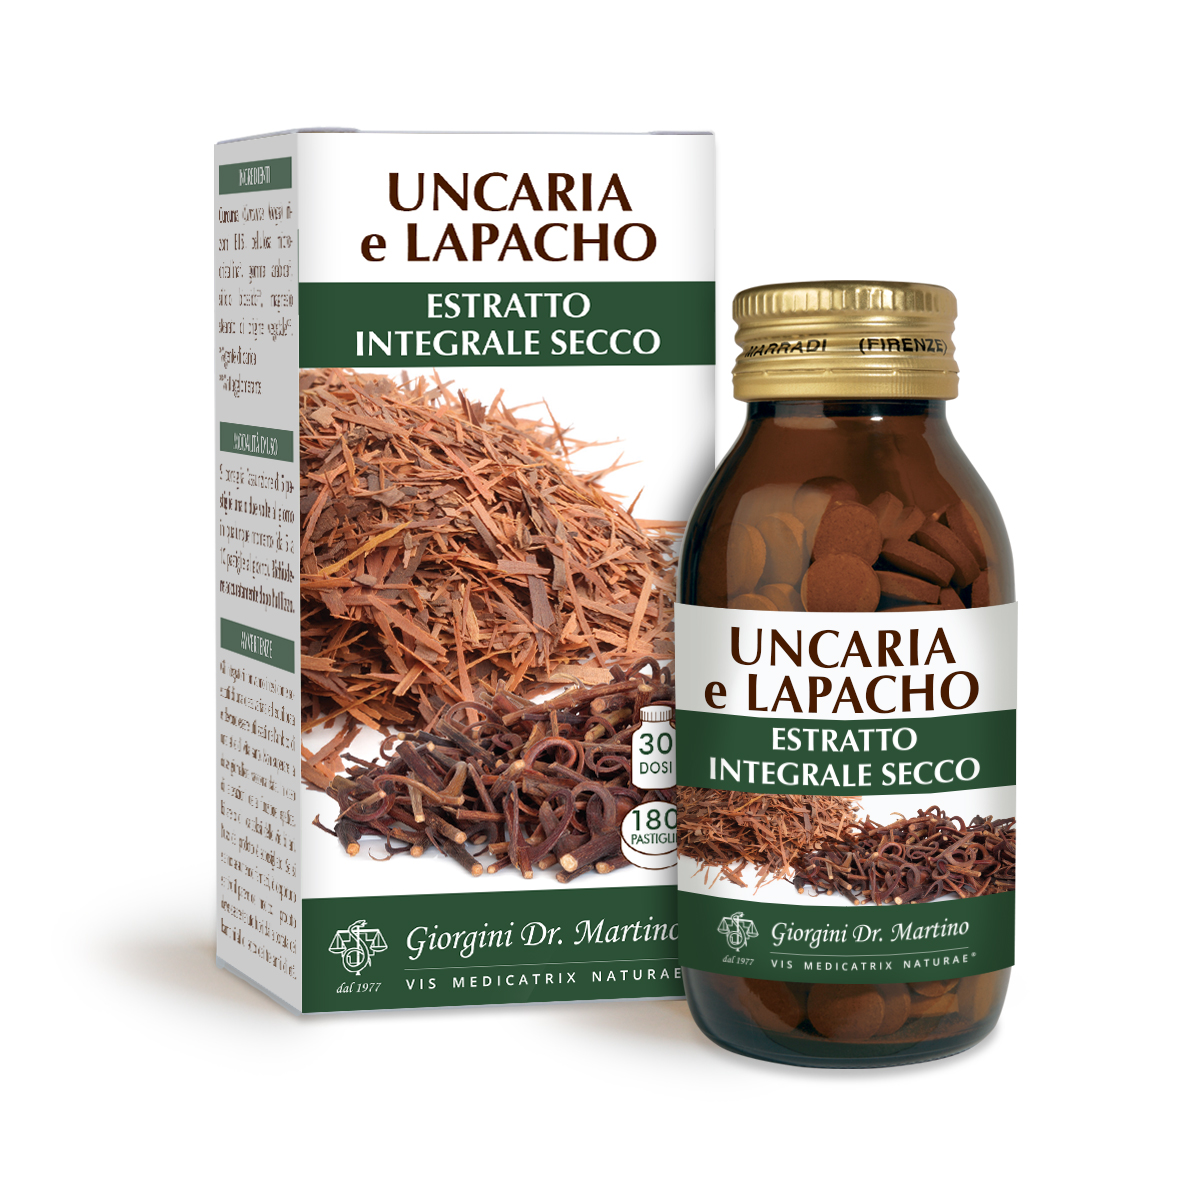 UNCARIA-LAPACHO Estratto Integrale Secco 90g-180 PAST 500 mg